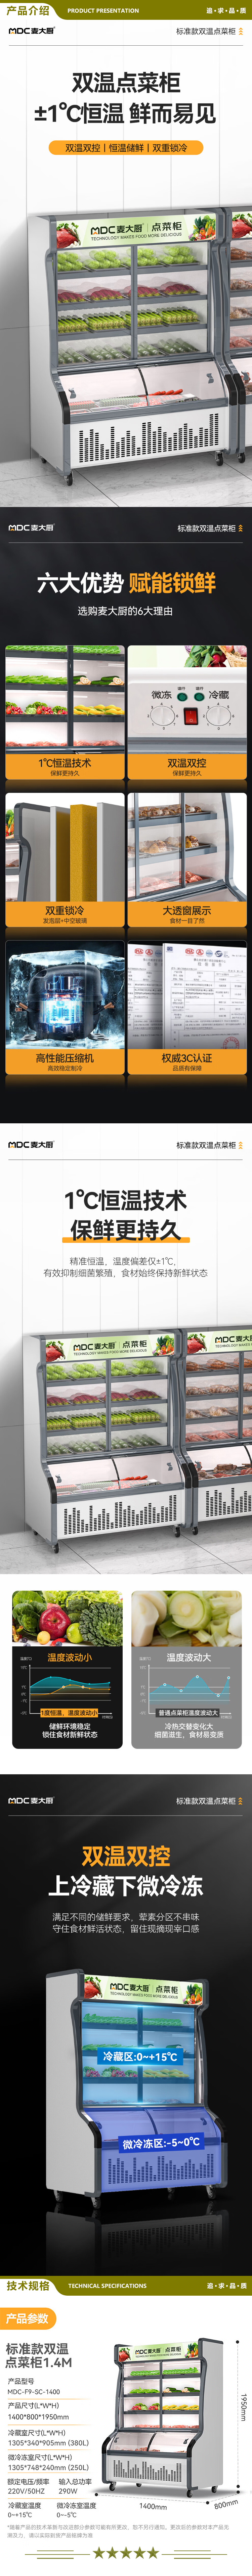 麦大厨 MDC-F9-SC-1400 点菜柜商用展示柜冷藏冷冻双用冷藏柜保鲜柜冰柜冒菜柜麻辣烫柜烧烤柜串串柜   2.jpg